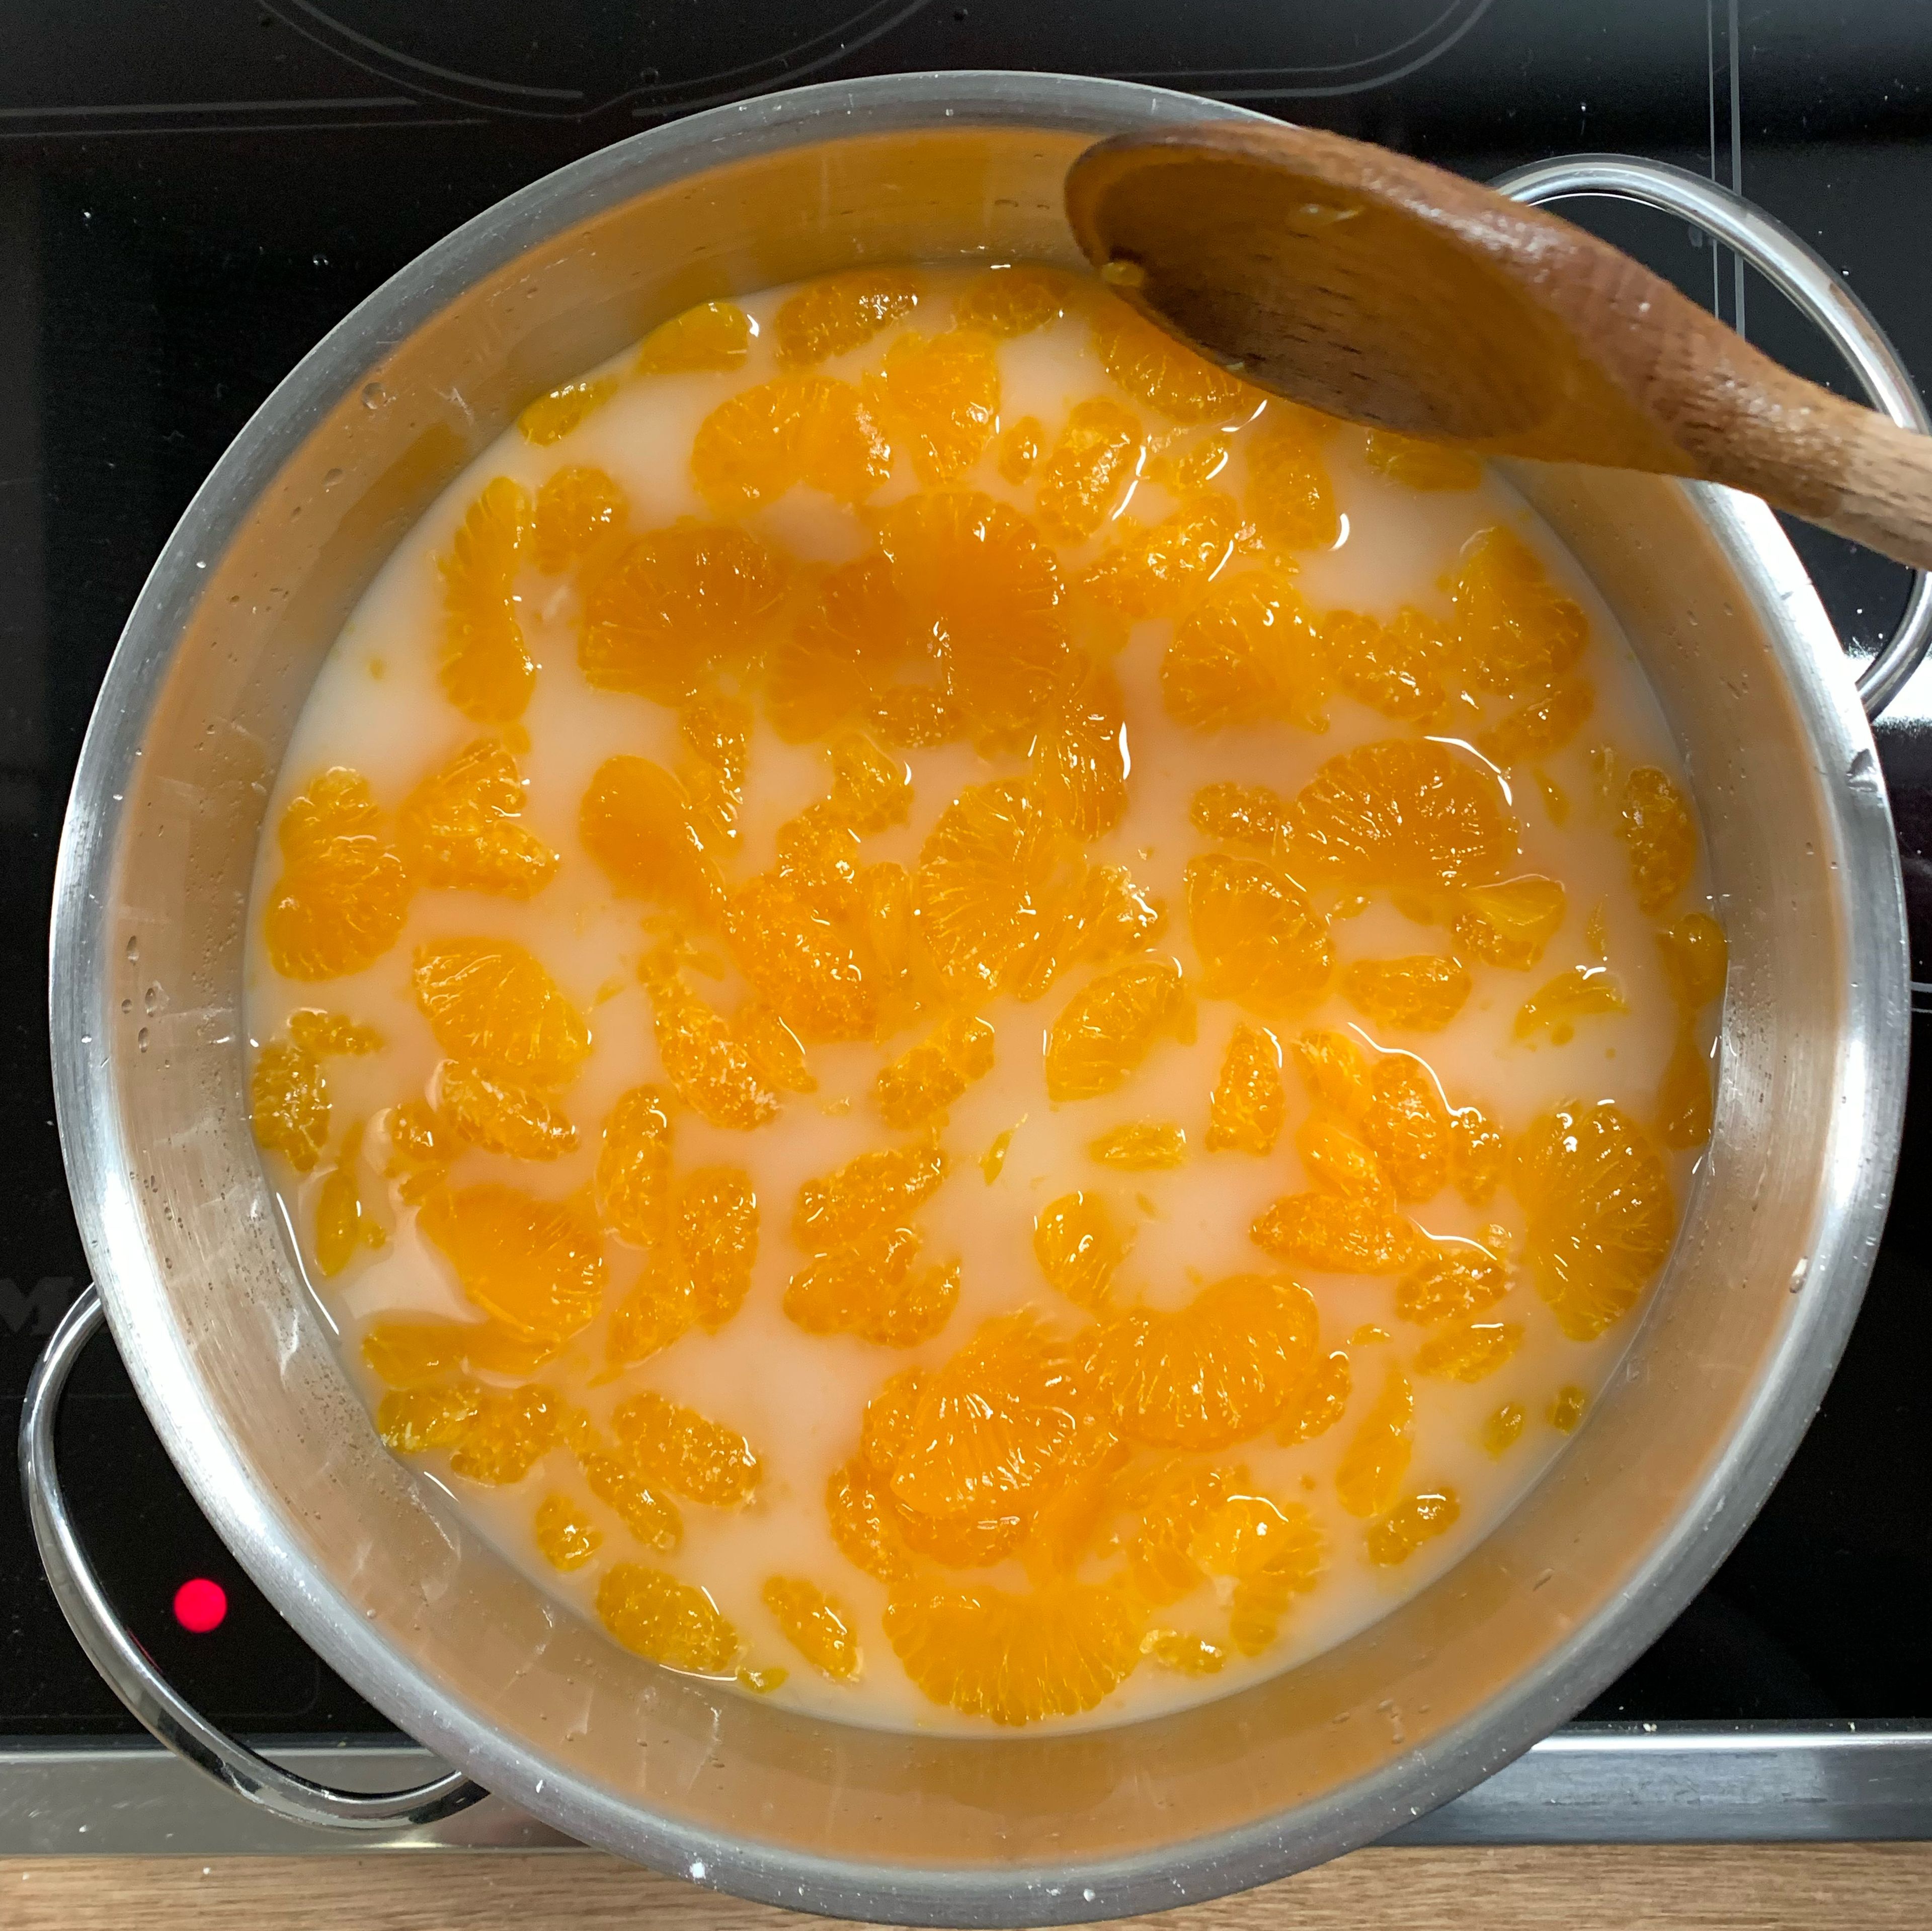 Mandarinen dem Saft zugeben und aufkochen. Vorsichtig mit einem Kochlöffel rühren, so dass die Mandarinen ganz bleiben.